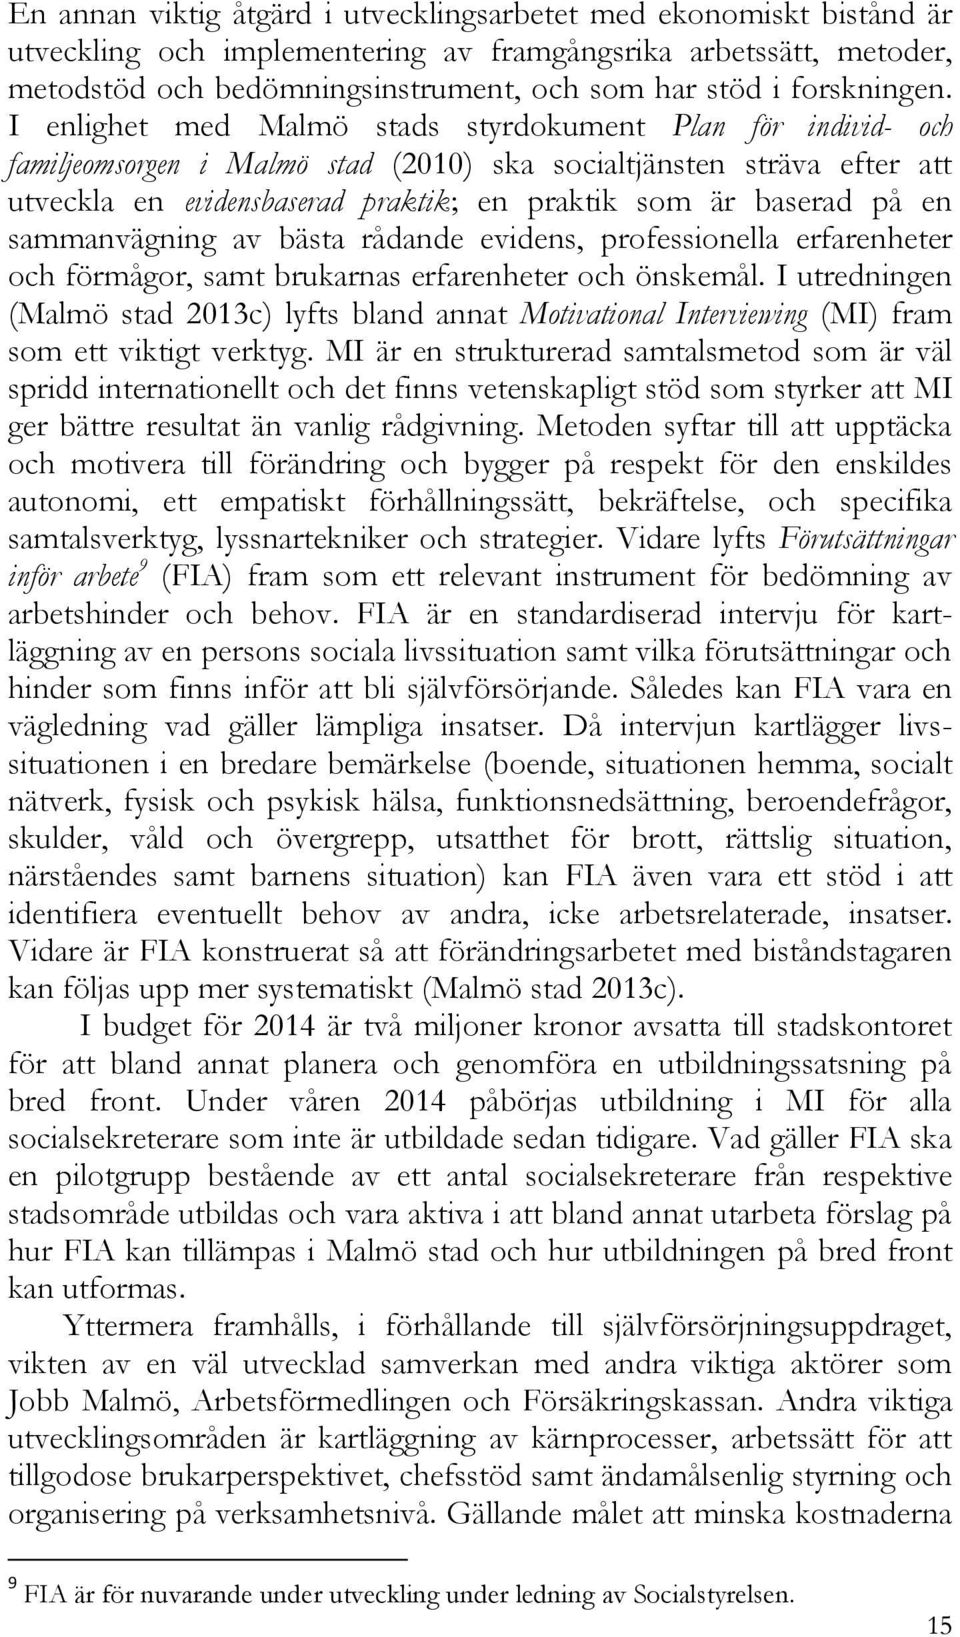 I enlighet med Malmö stads styrdokument Plan för individ- och familjeomsorgen i Malmö stad (2010) ska socialtjänsten sträva efter att utveckla en evidensbaserad praktik; en praktik som är baserad på